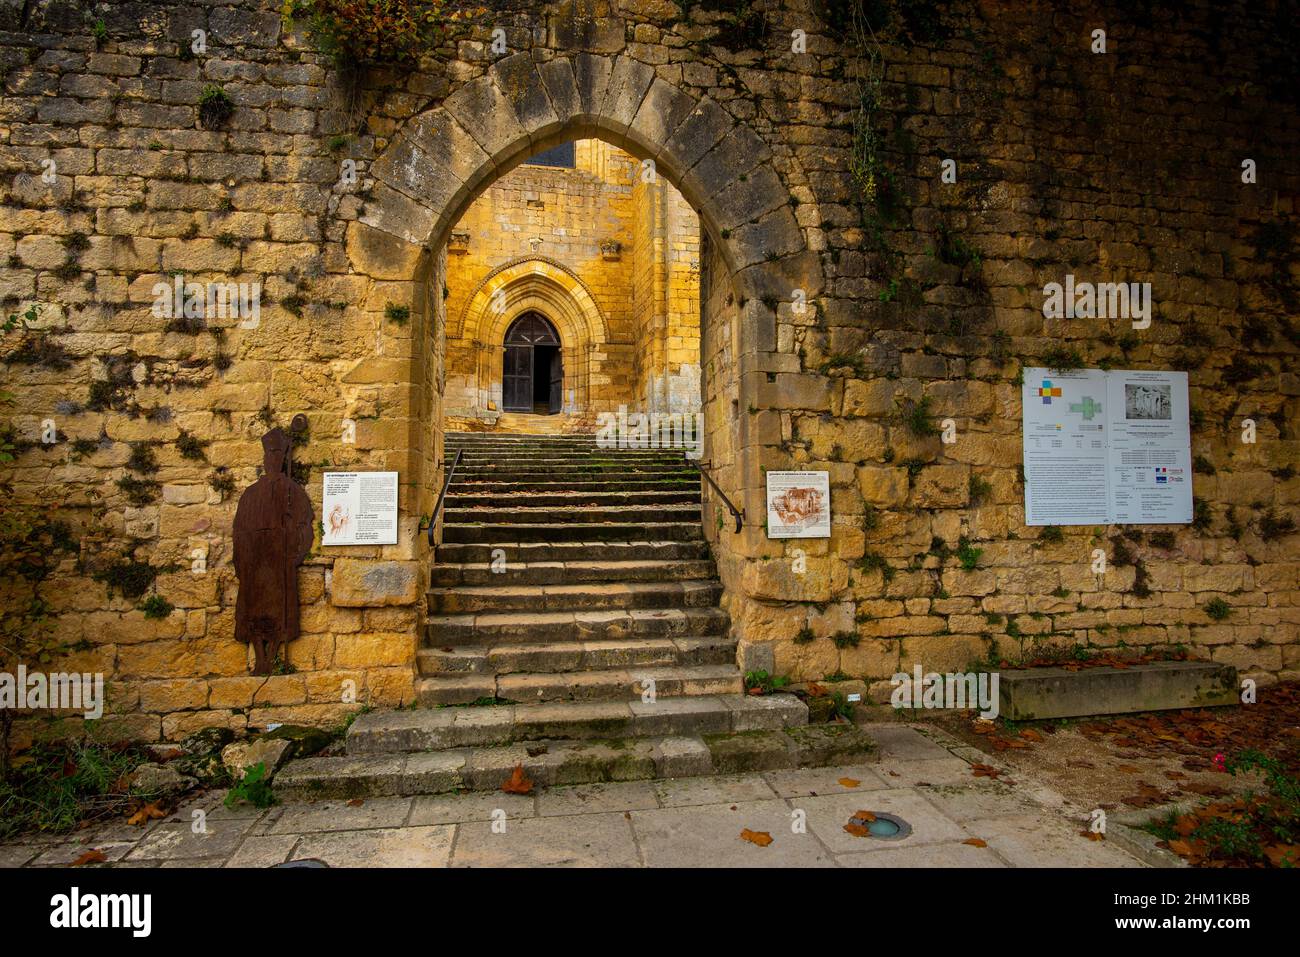 Coly-Saint-Amand, Francia - 5 novembre 2021: Il cancello di accesso alla chiesa fortificata con alcuni pannelli di informazioni turistiche, ma senza persone Foto Stock